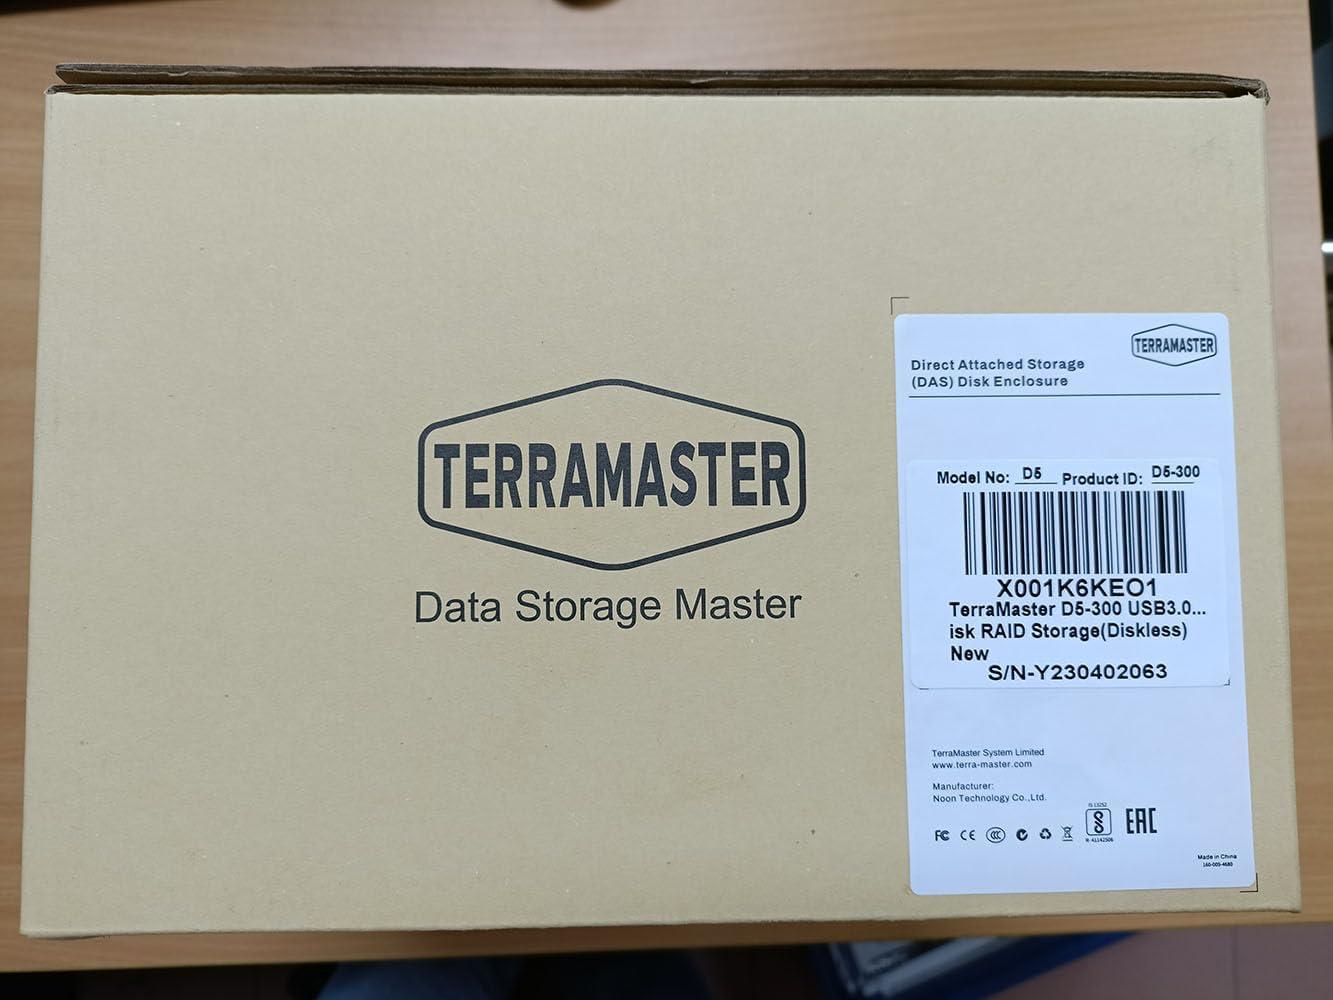 TERRAMASTER D5-300 USB3.1 (Gen1) Type C 5-Bay External Hard Drive